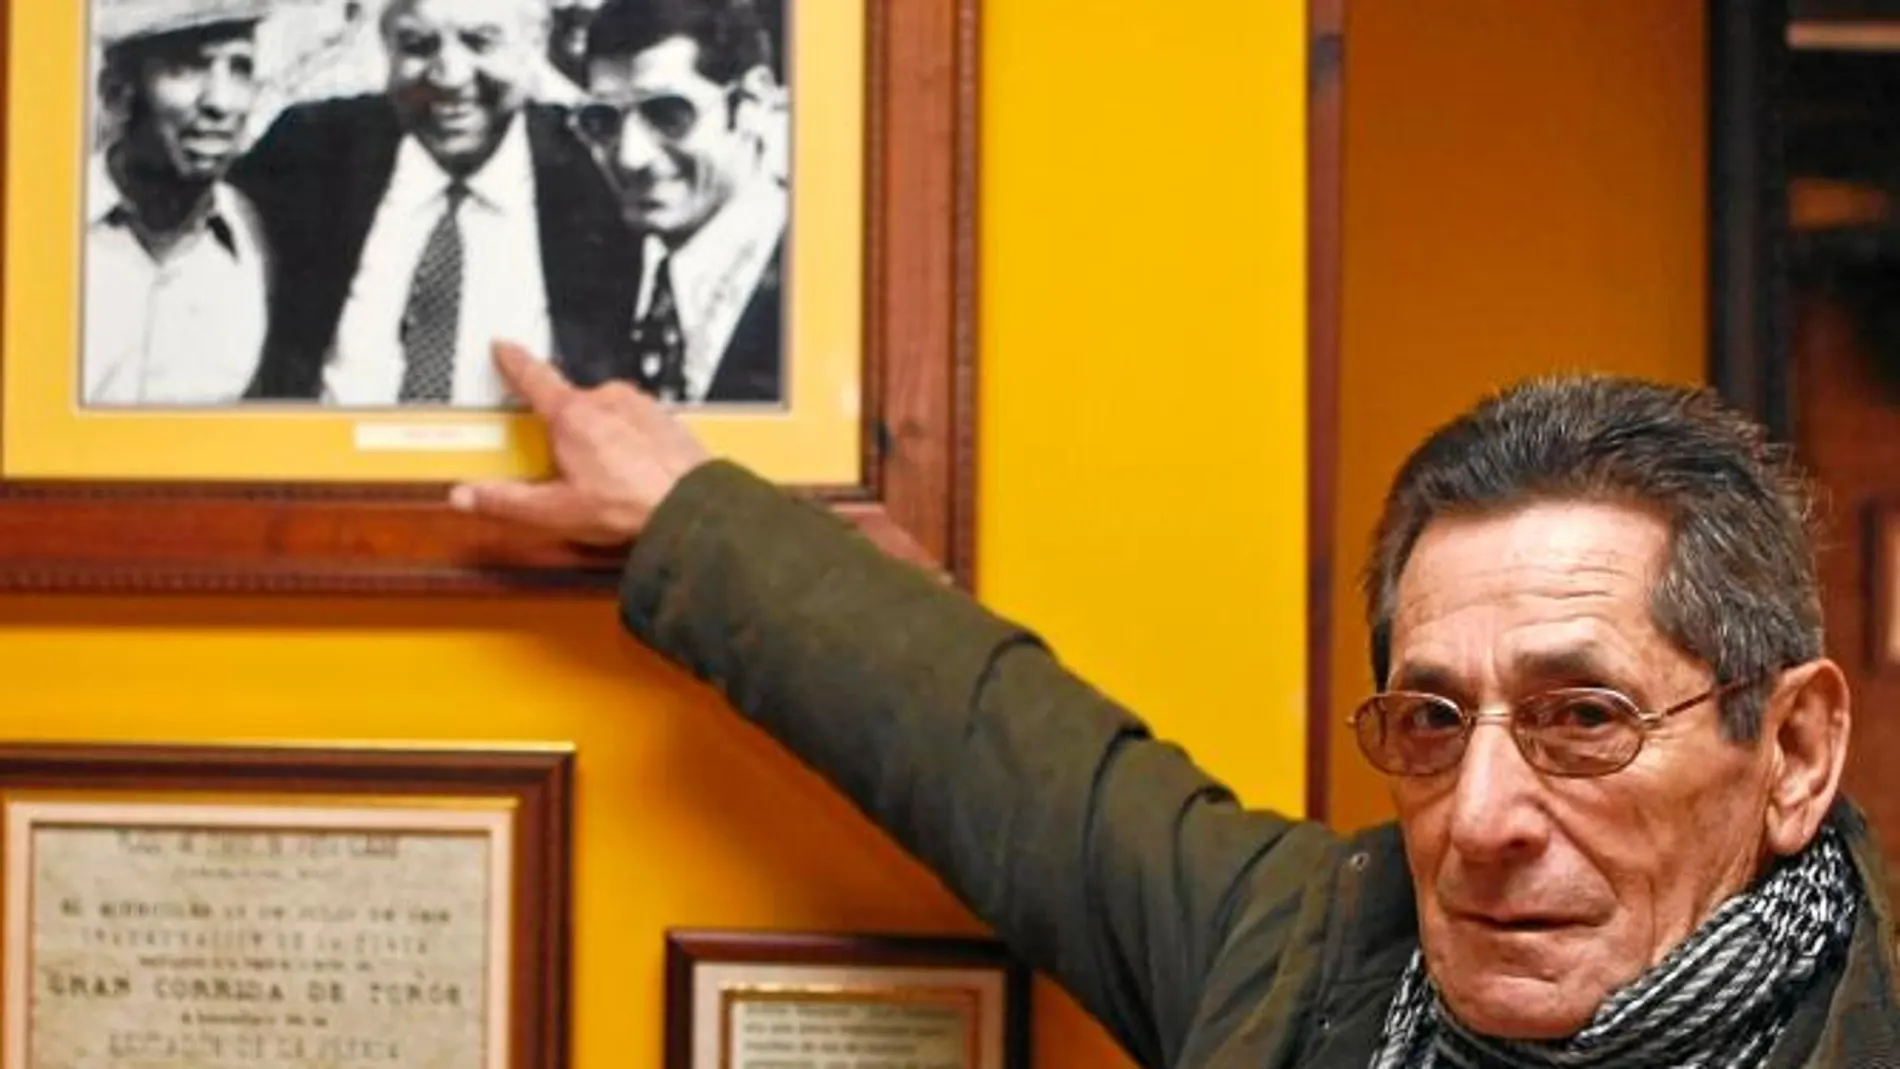 Andrés Vázquez lidiará un Victorino este sábado en Zamora para festejar 80 años